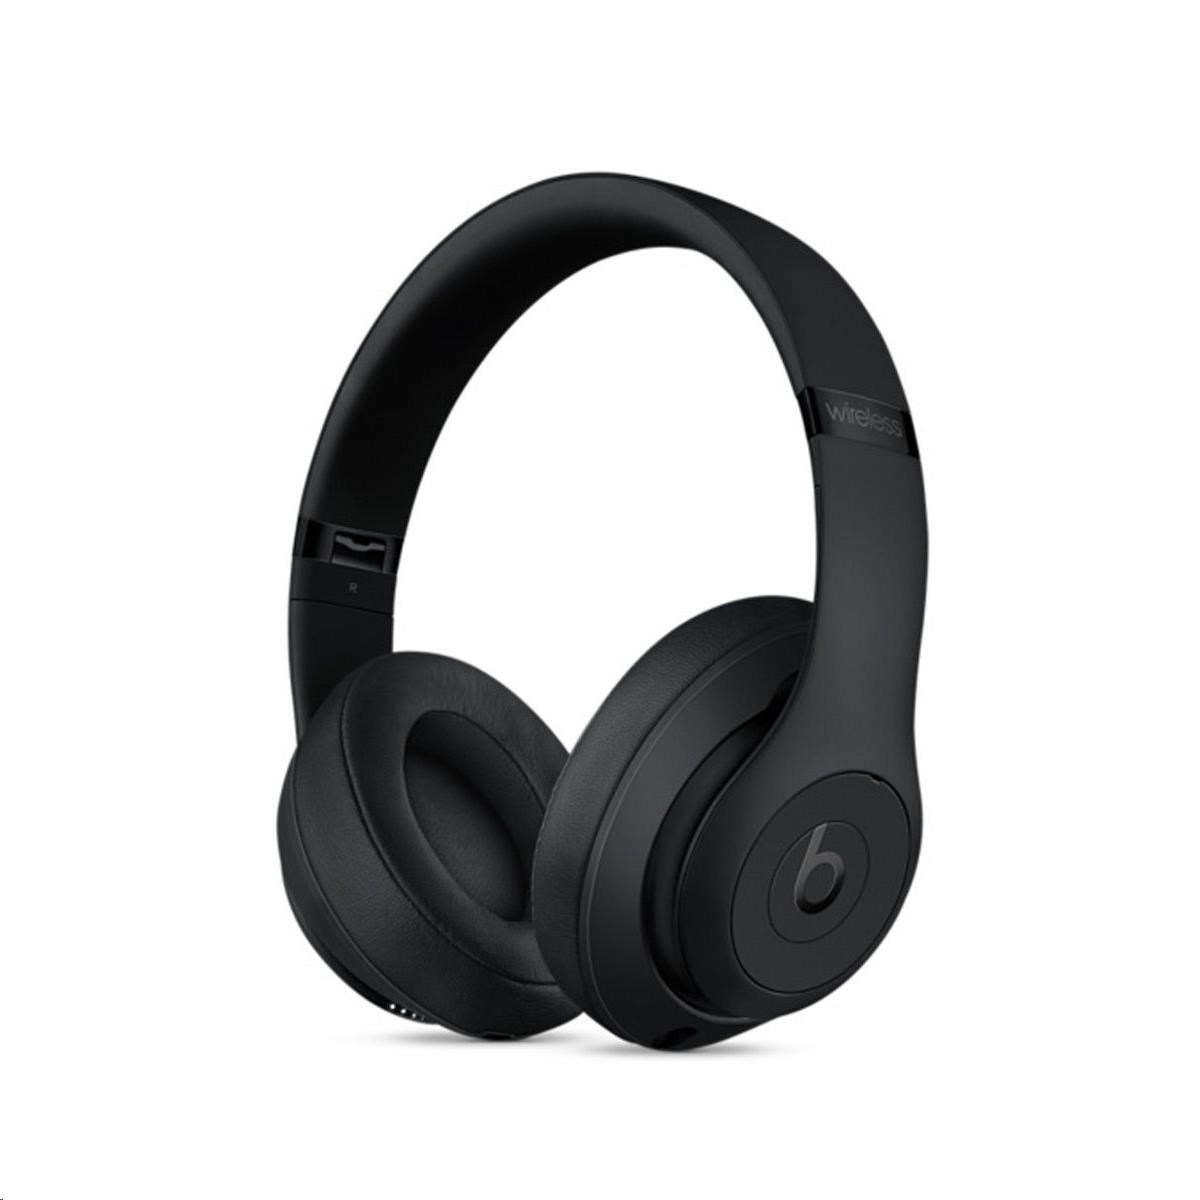 Beats Studio3 Wireless Over-Ear Headphones - Matte Black5 